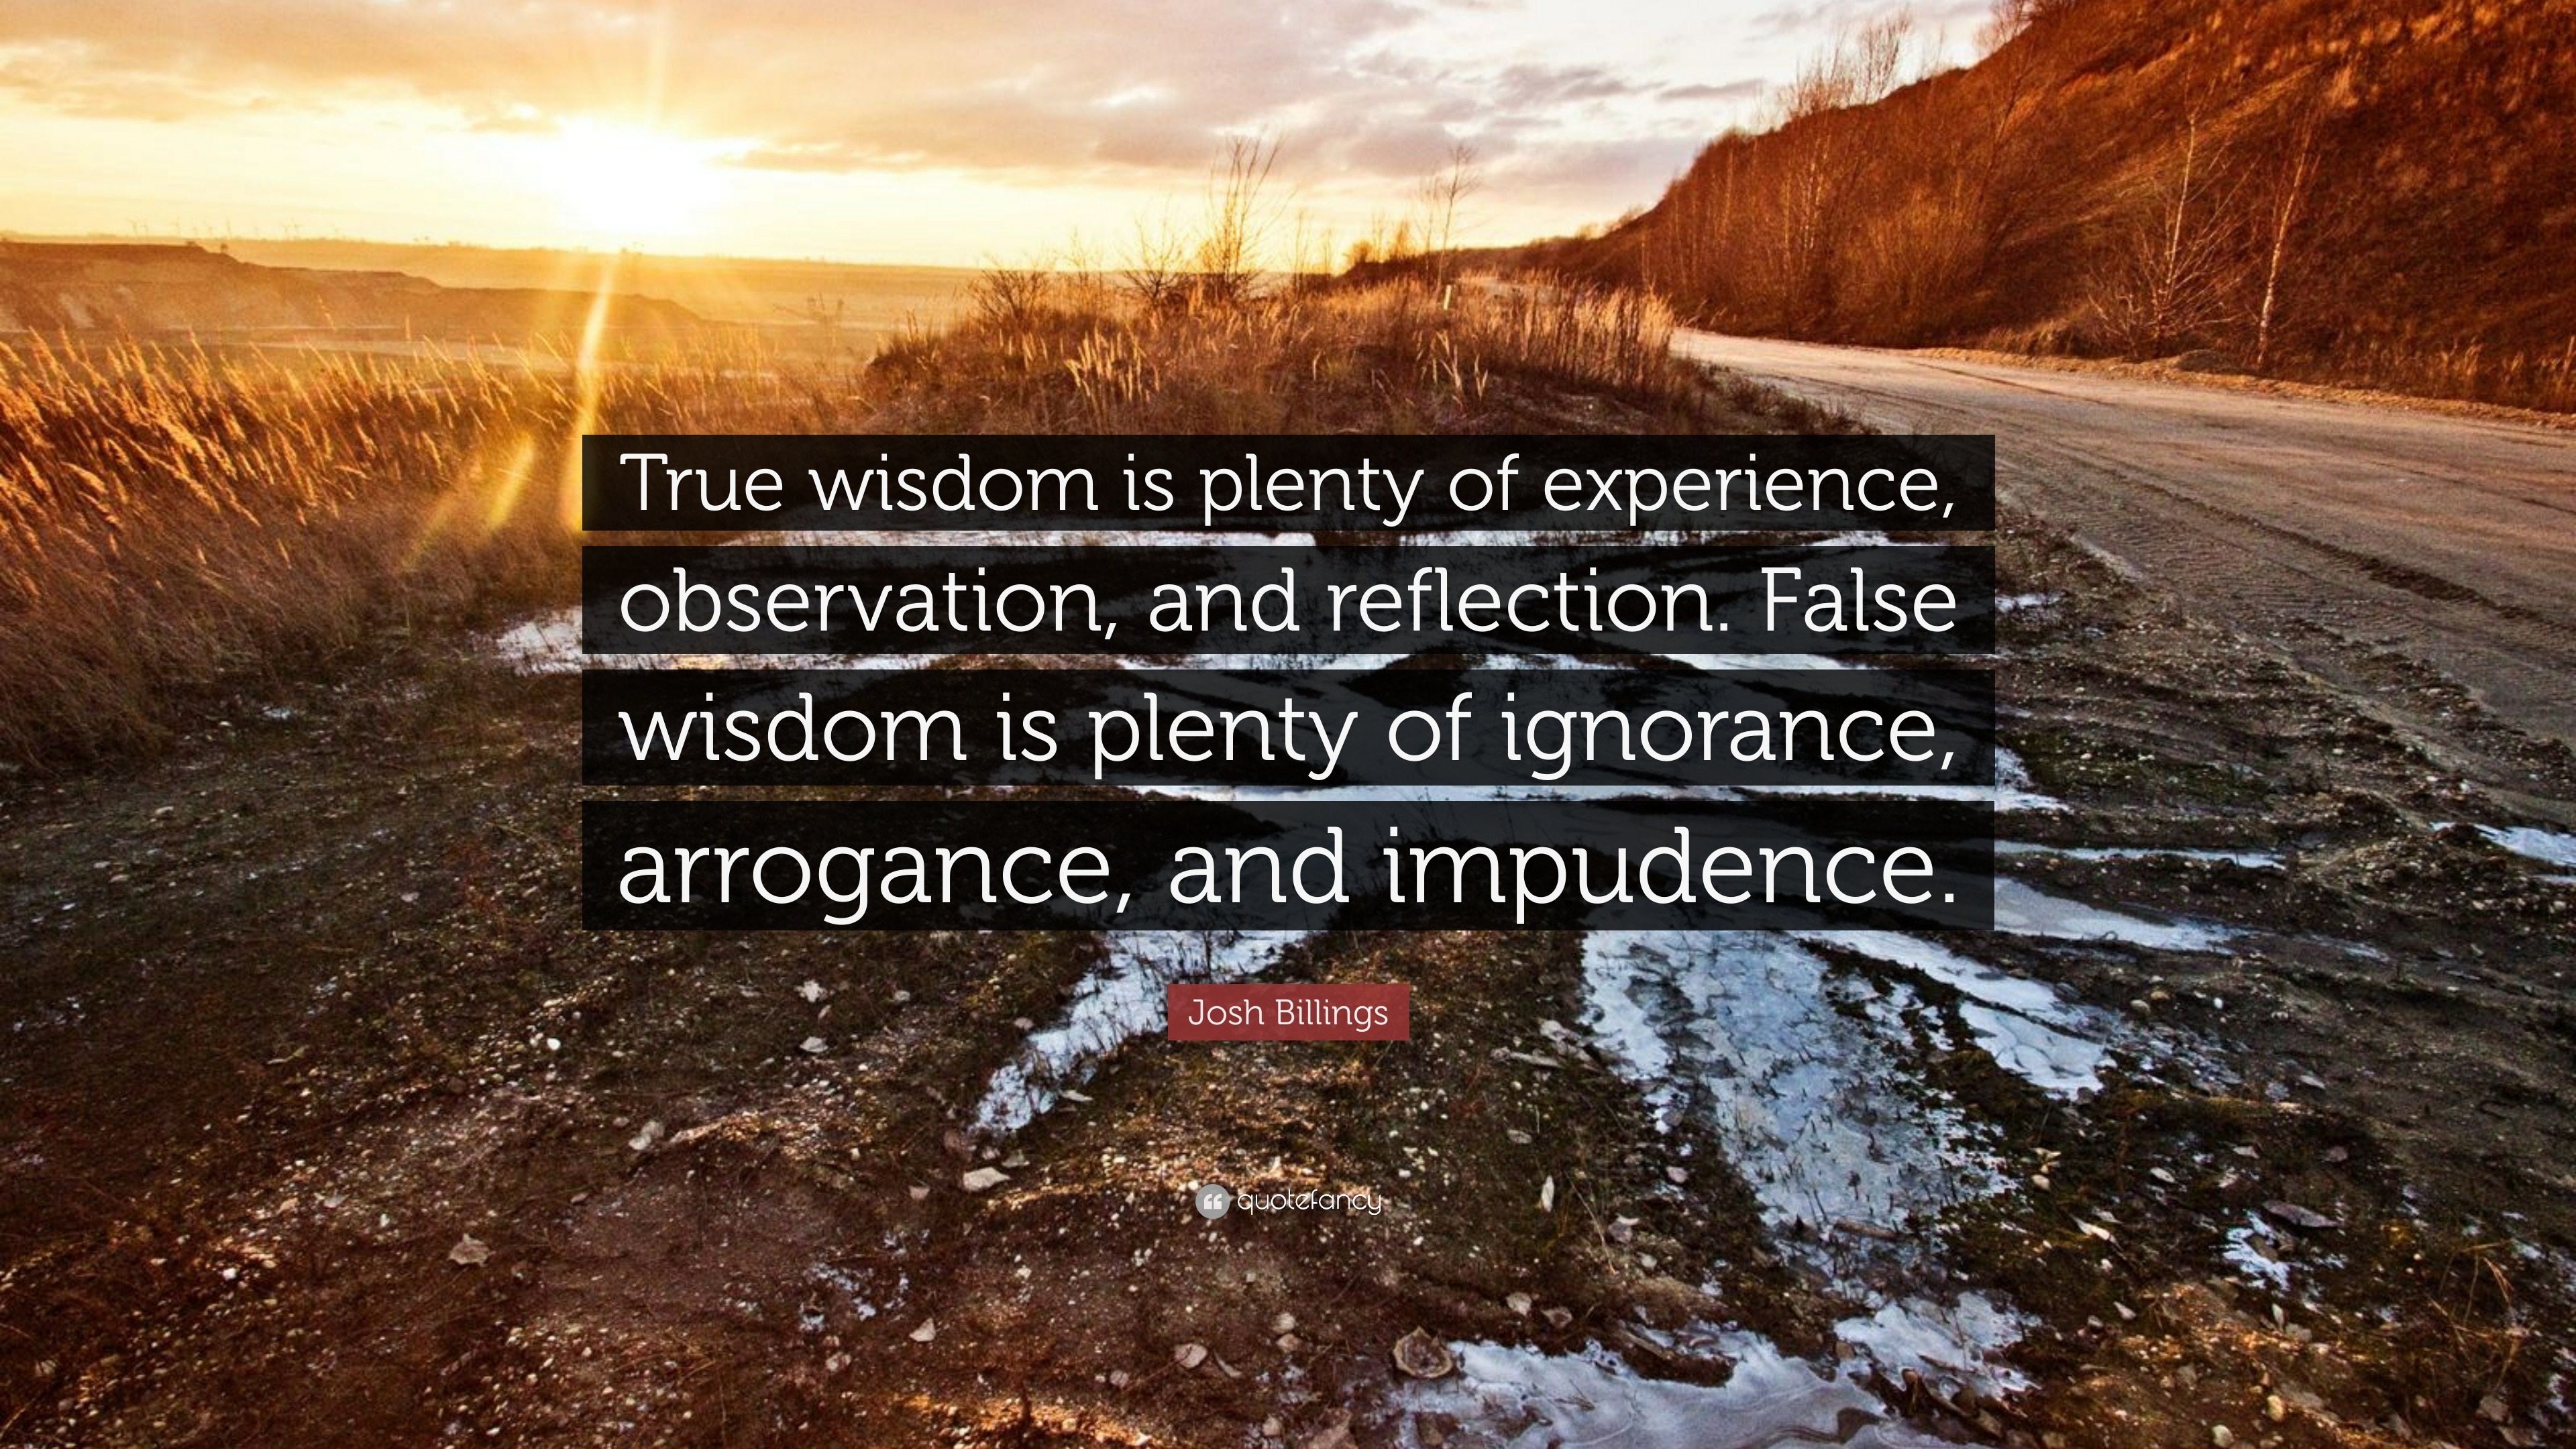 Josh Billings Quote: “True wisdom is plenty of experience, observation ...